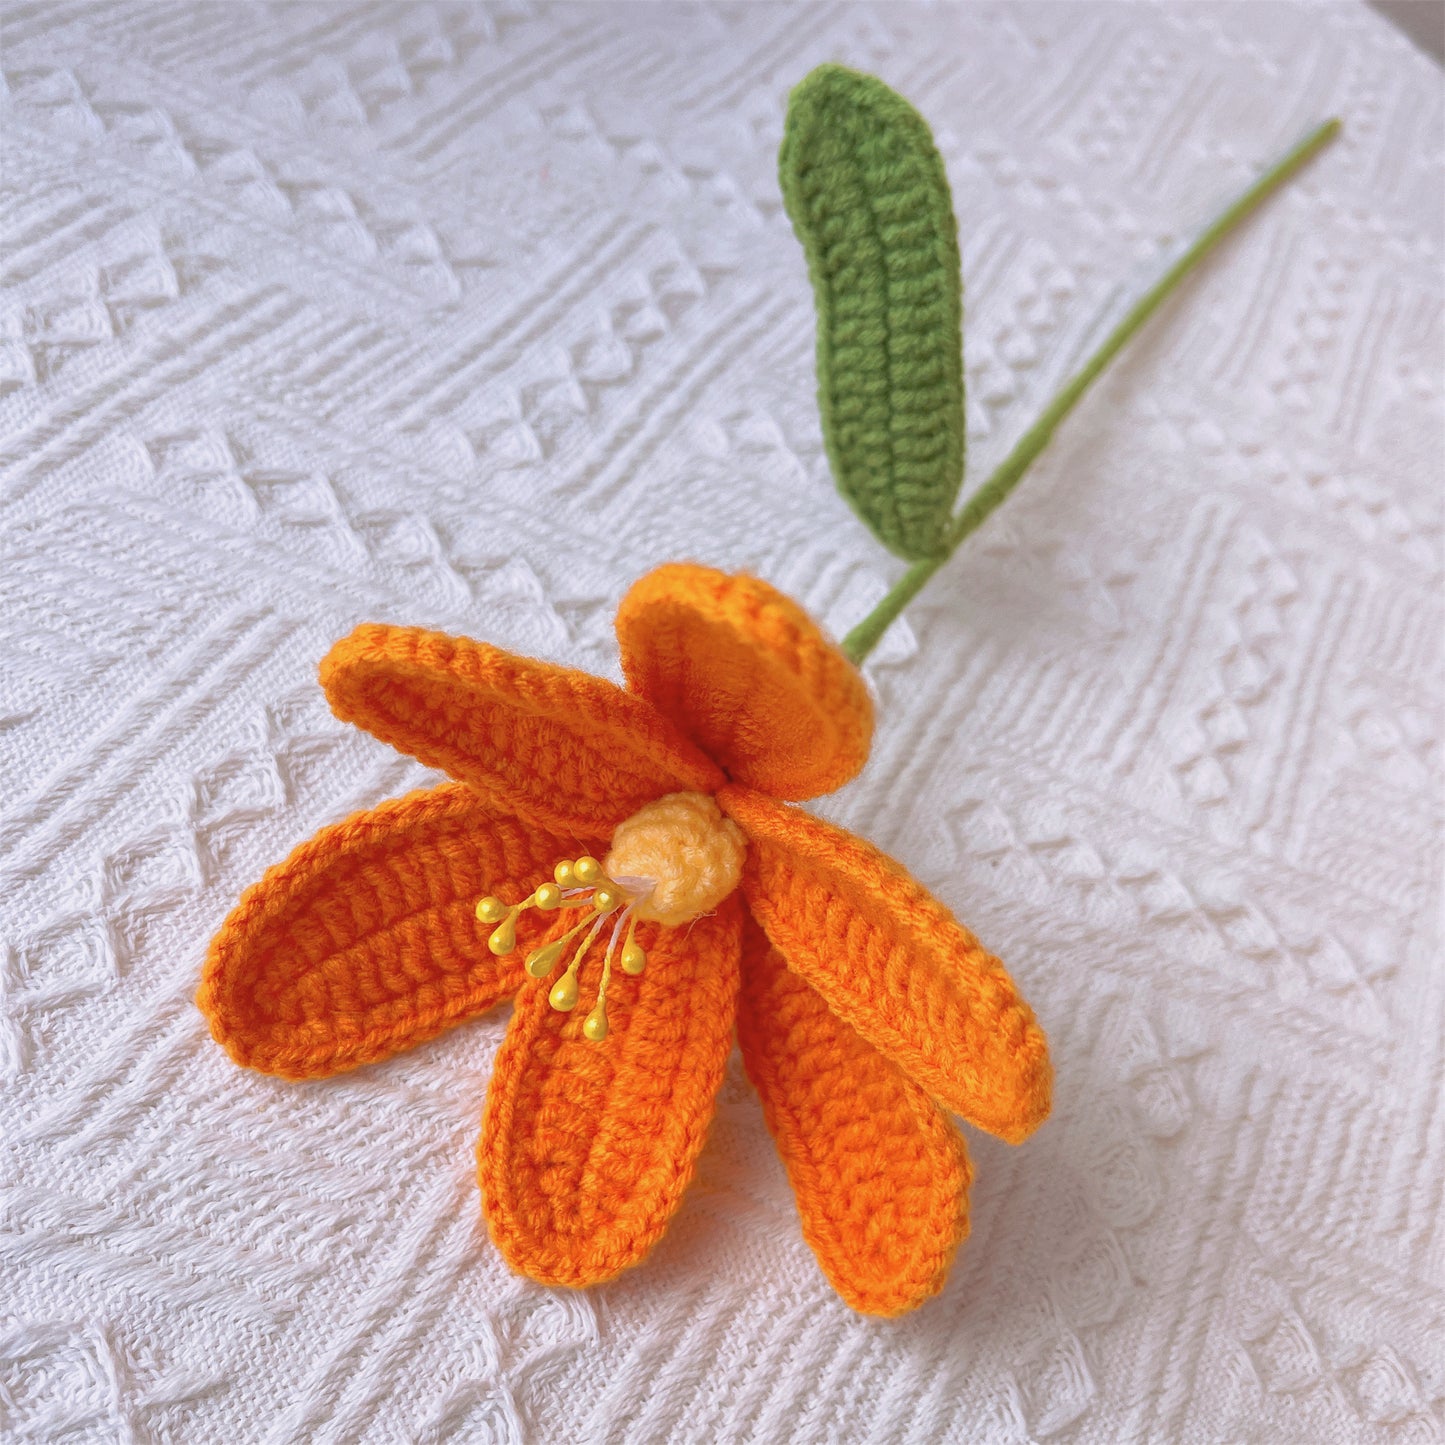 Bouquet d’arrangement floral rouge et orange au crochet fabriqué à la main avec des feuilles d’eucalyptus, parfait pour les cadeaux, les mariages et les occasions spéciales